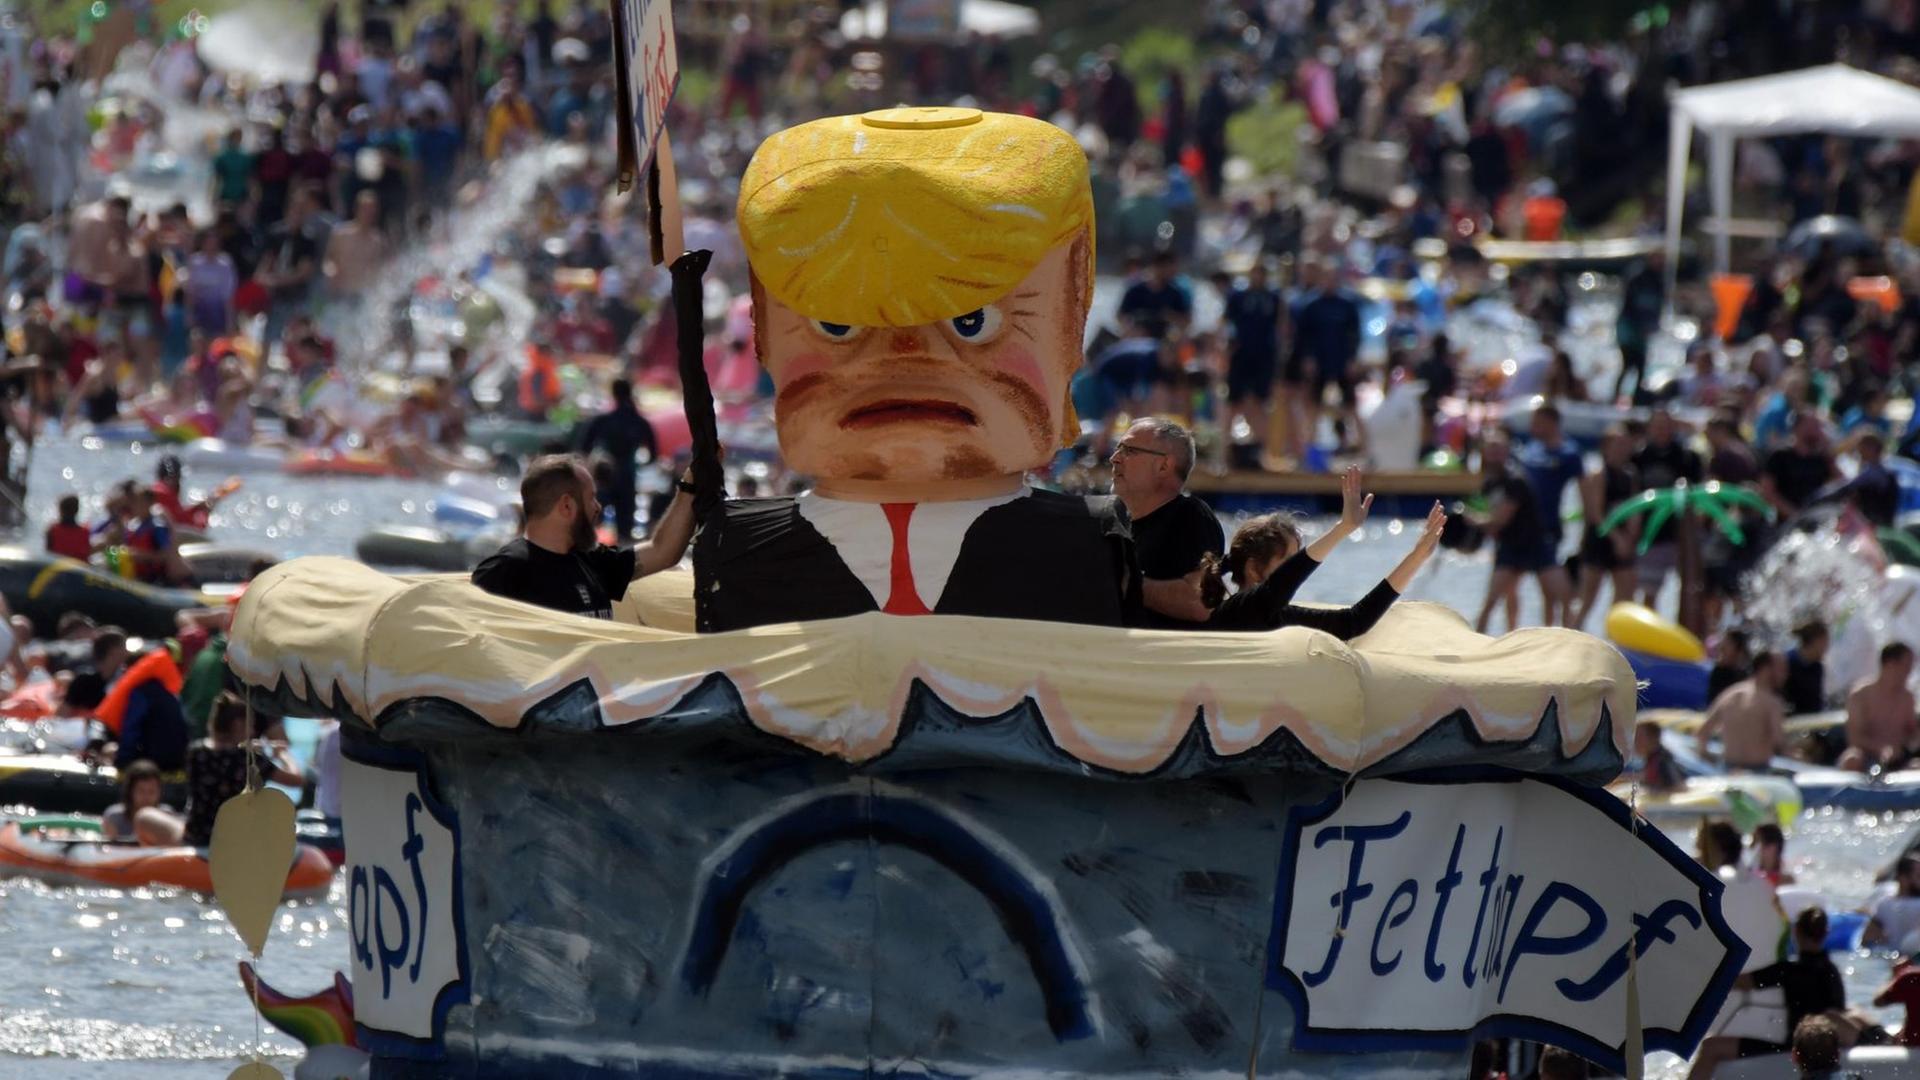 Das Foto zeigt ein Themenboot, das US-Präsident Donald Trump in einem überdimensionalen Fettnapf zeigt.